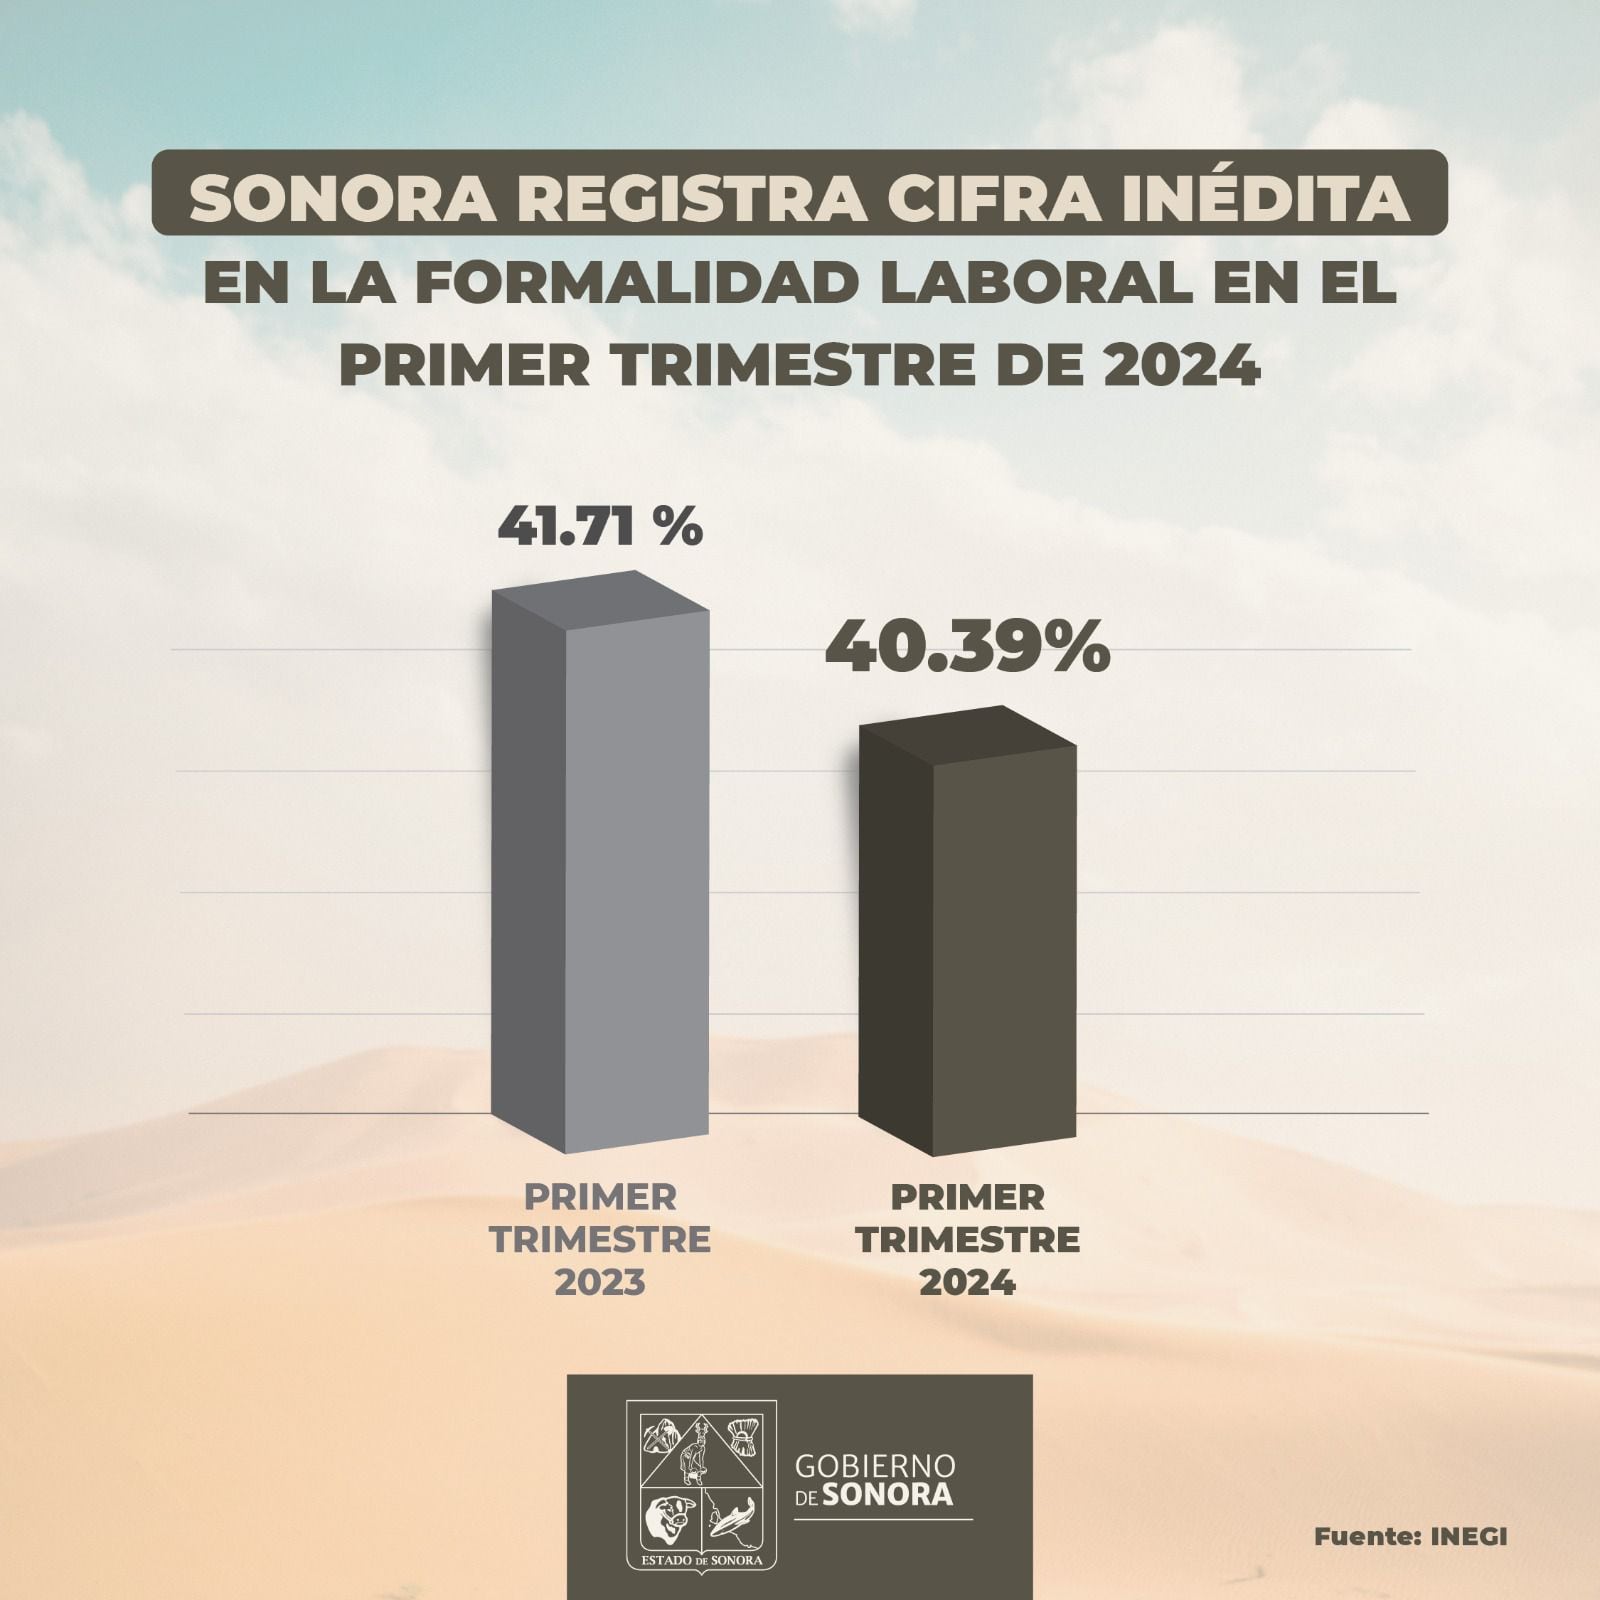 Sonora registra cifra inédita en la formalidad laboral en primer trimestre de 2024